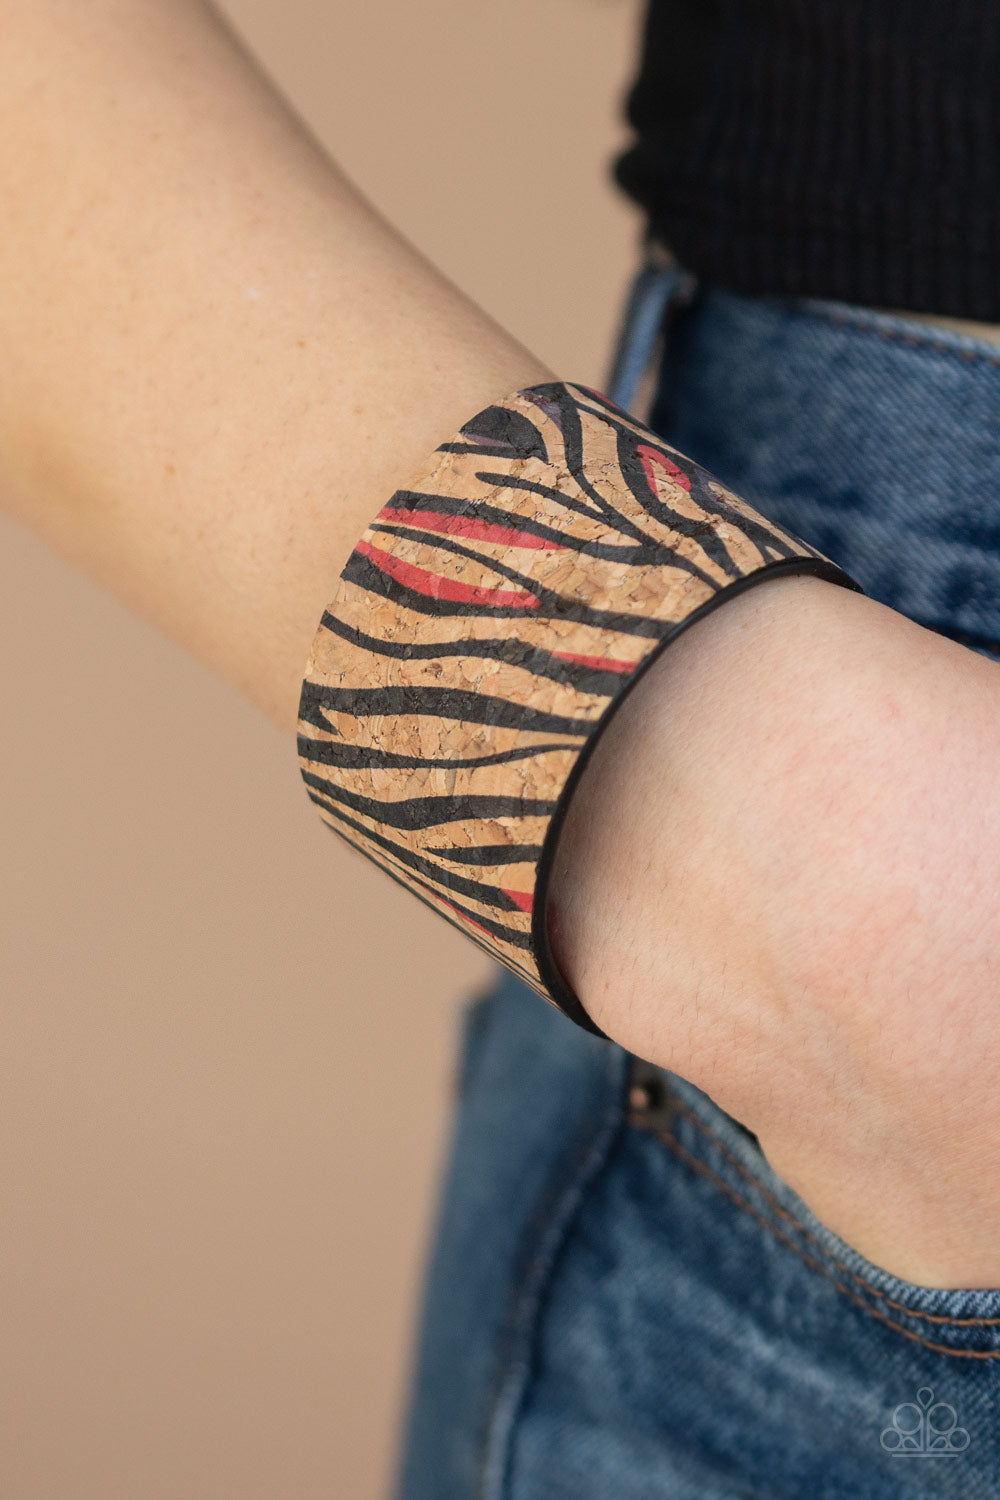 Paparazzi Accessories - Zebra Zone - Red Bracelet